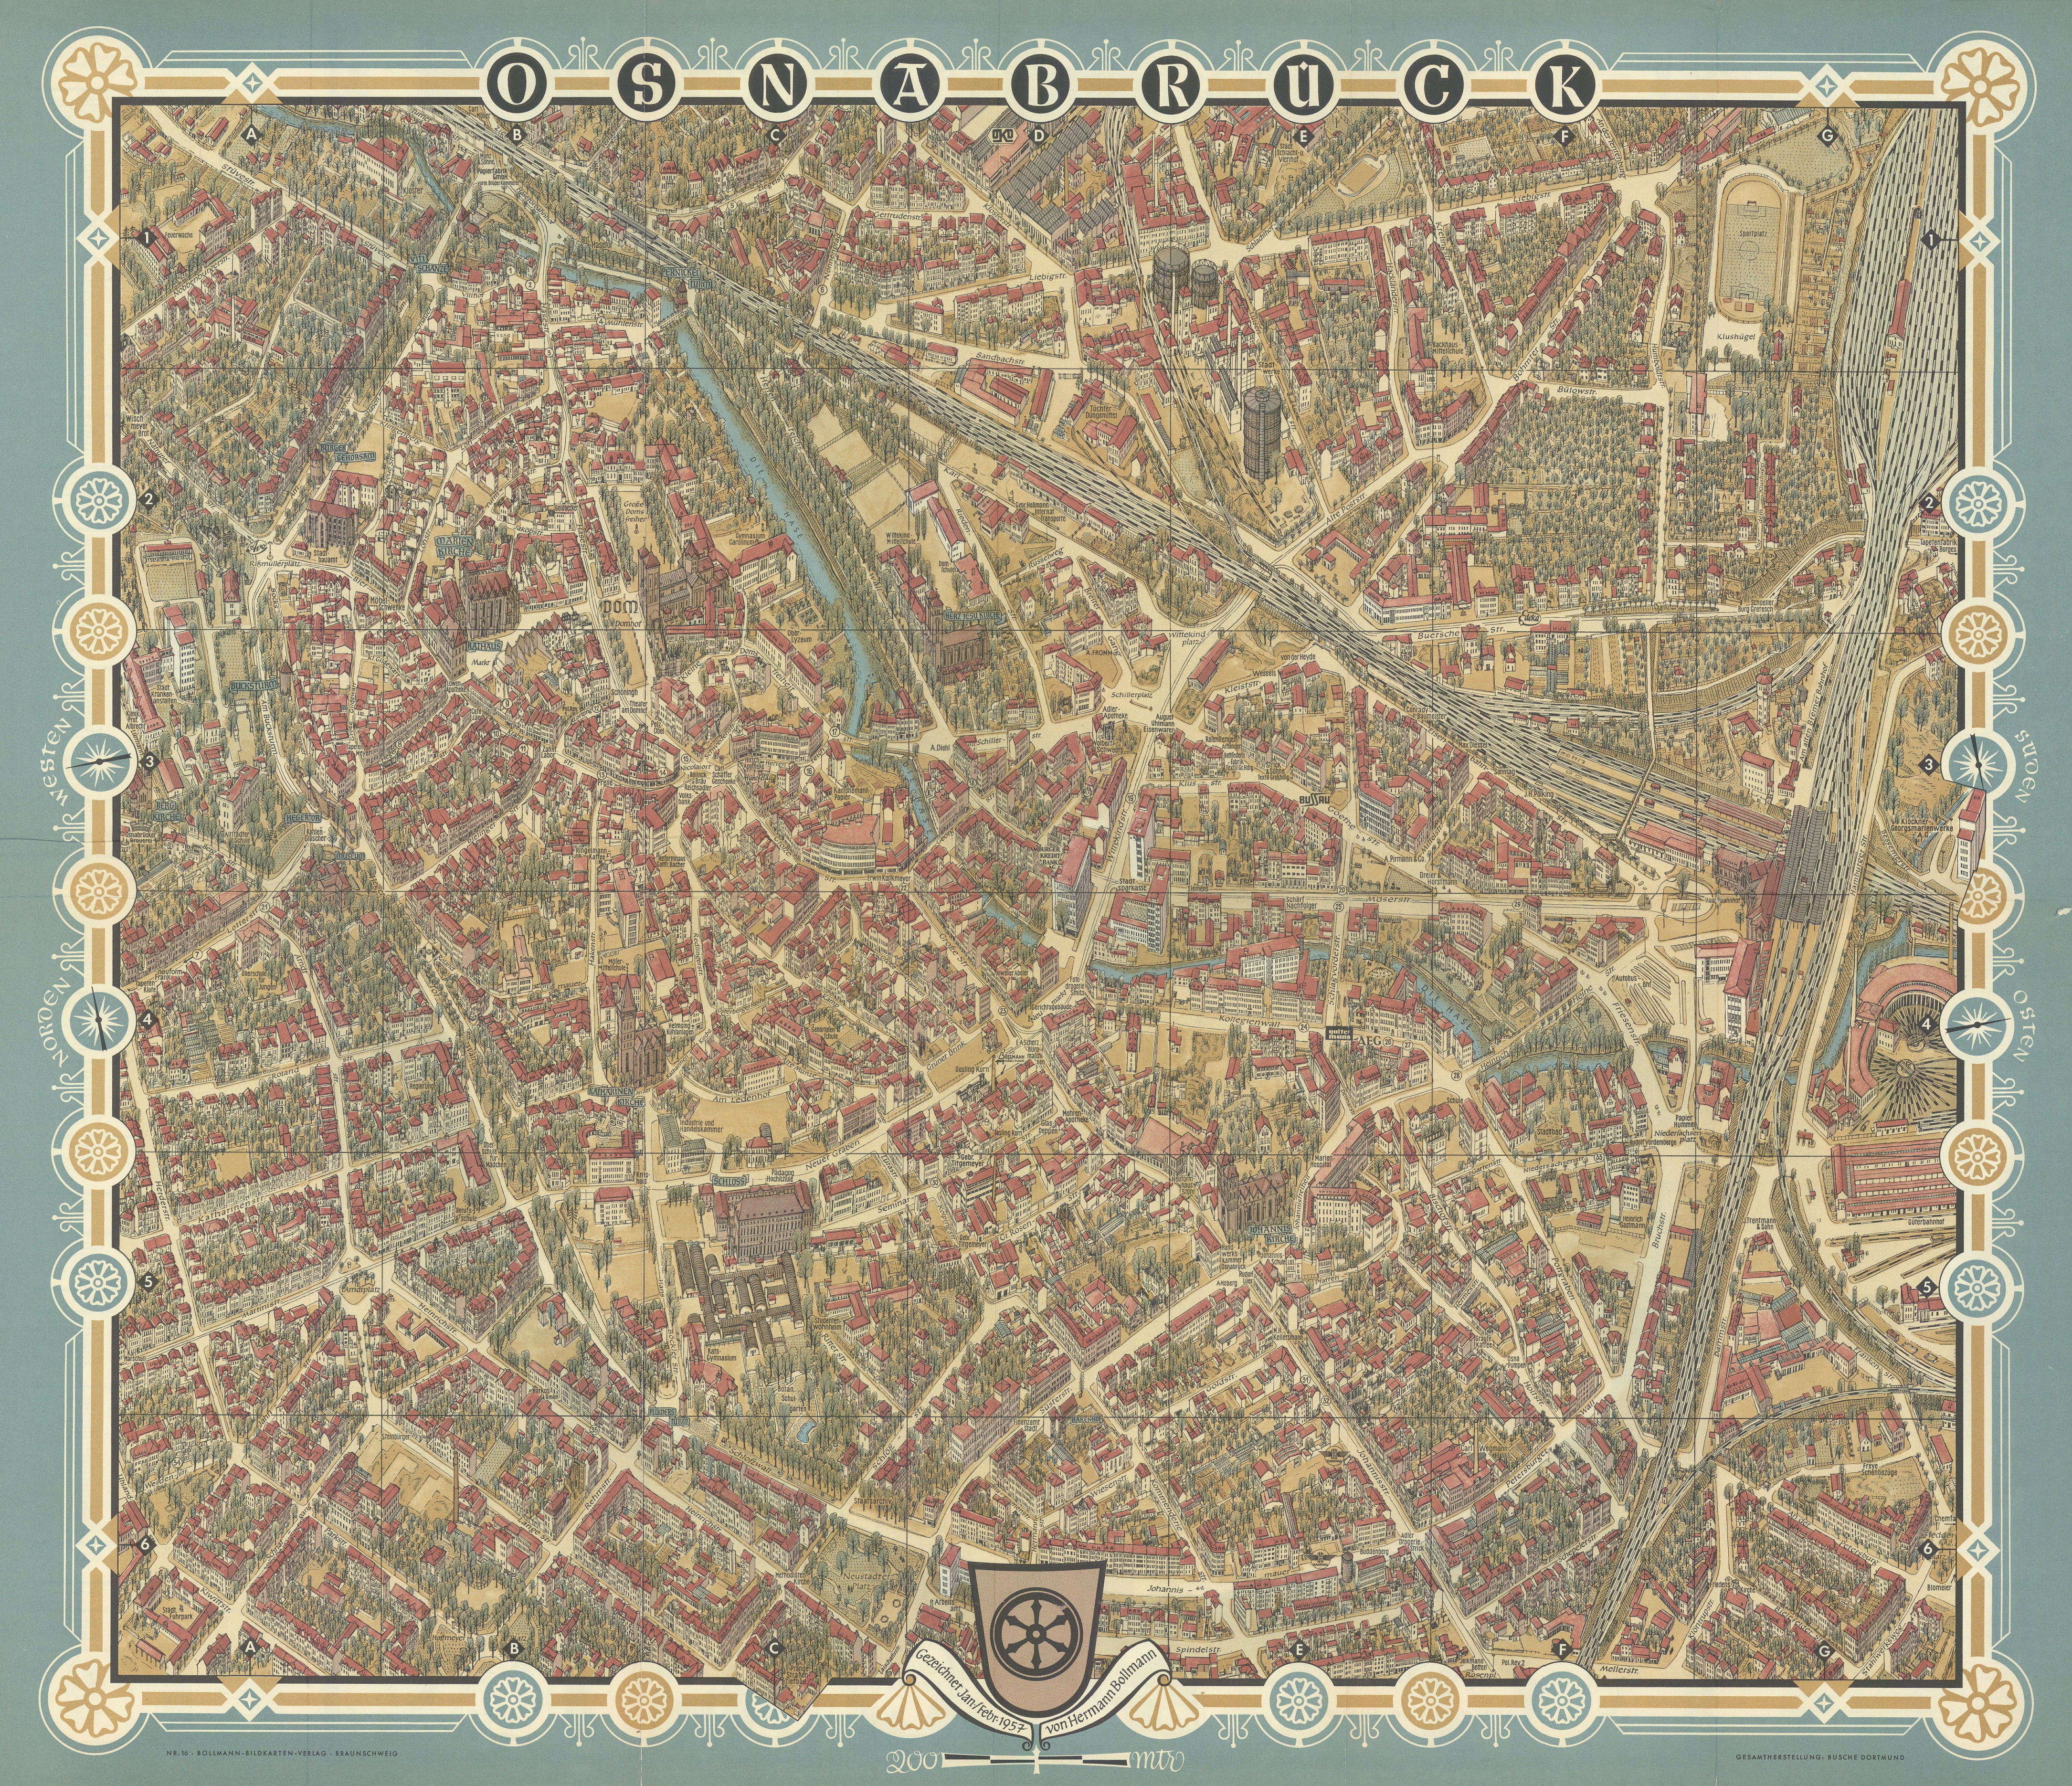 Associate Product Osnabrück pictorial bird's eye view city plan by Hermann Bollmann 1957 old map